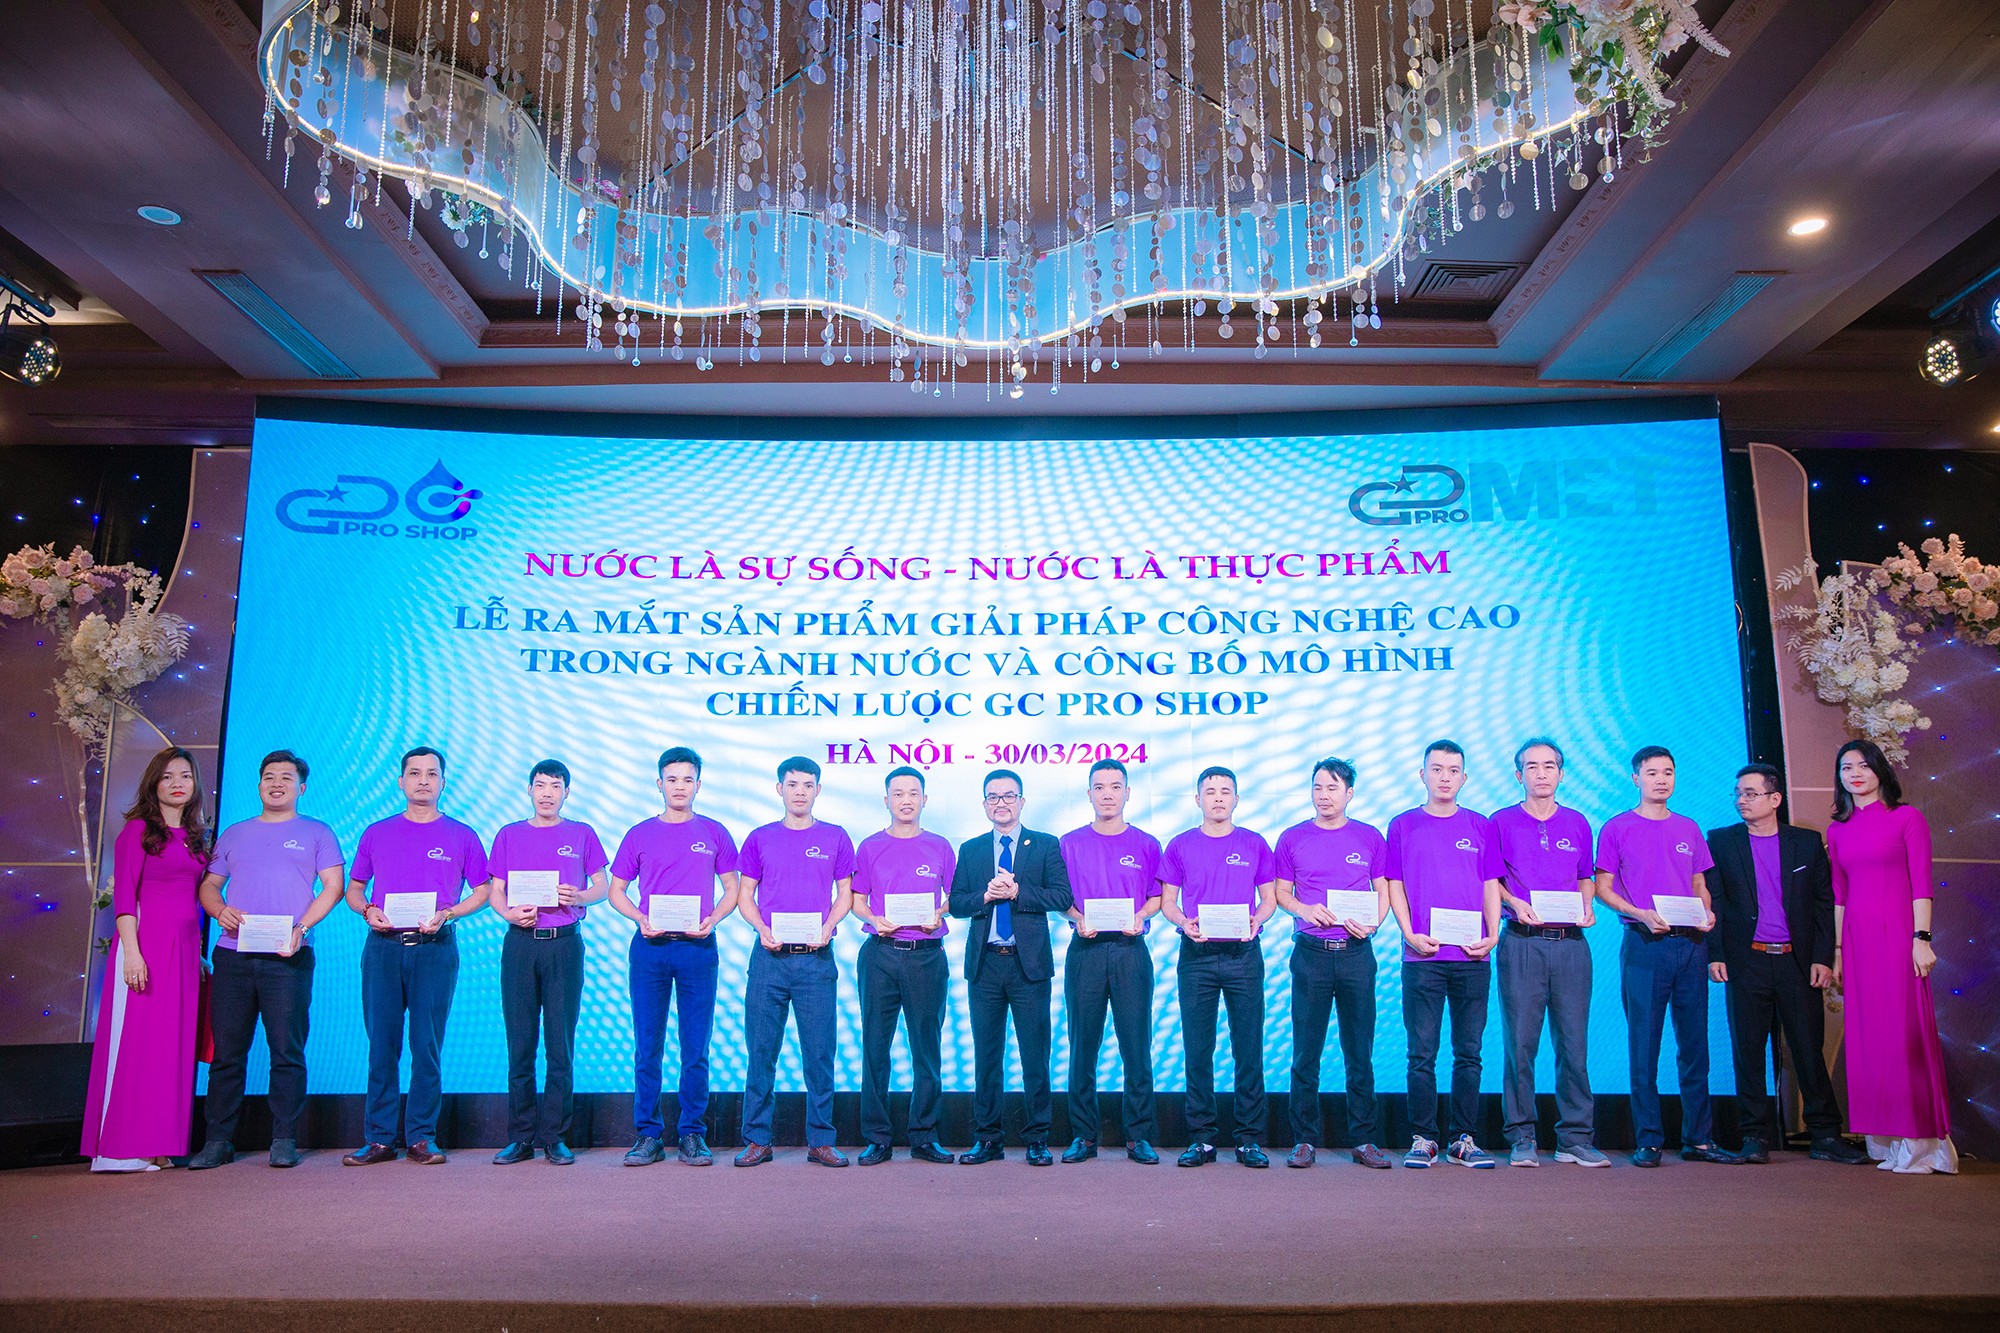 Viện trưởng Viện khoa học giáo dục và môi trường ông Nguyễn Văn Khương trao chứng nhận cho đội ngũ cộng tác viên tham gia Khóa học bồi dưỡng kiến thức về nước.